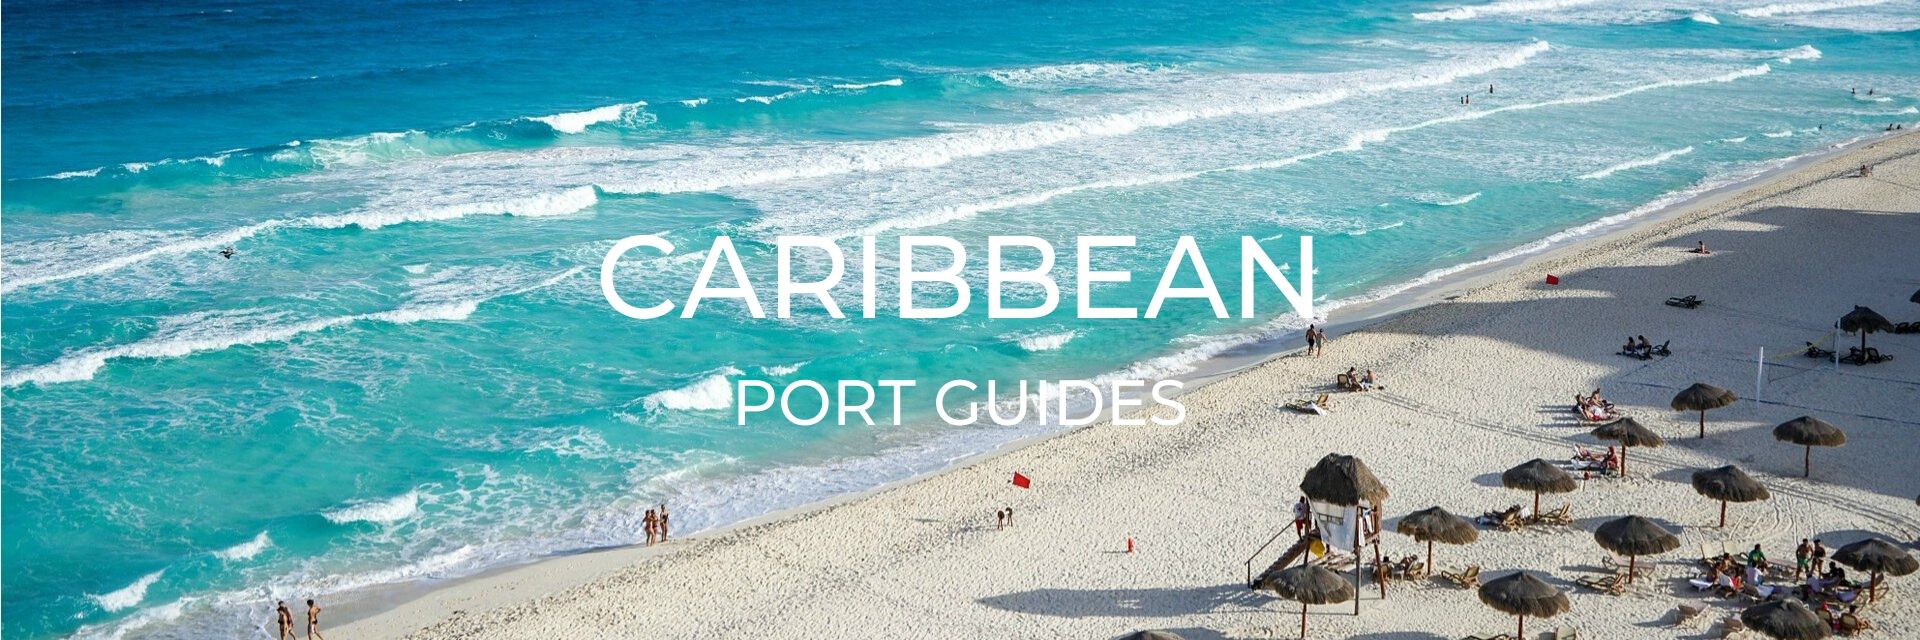 Caribbean Port Guide Page Desktop Header